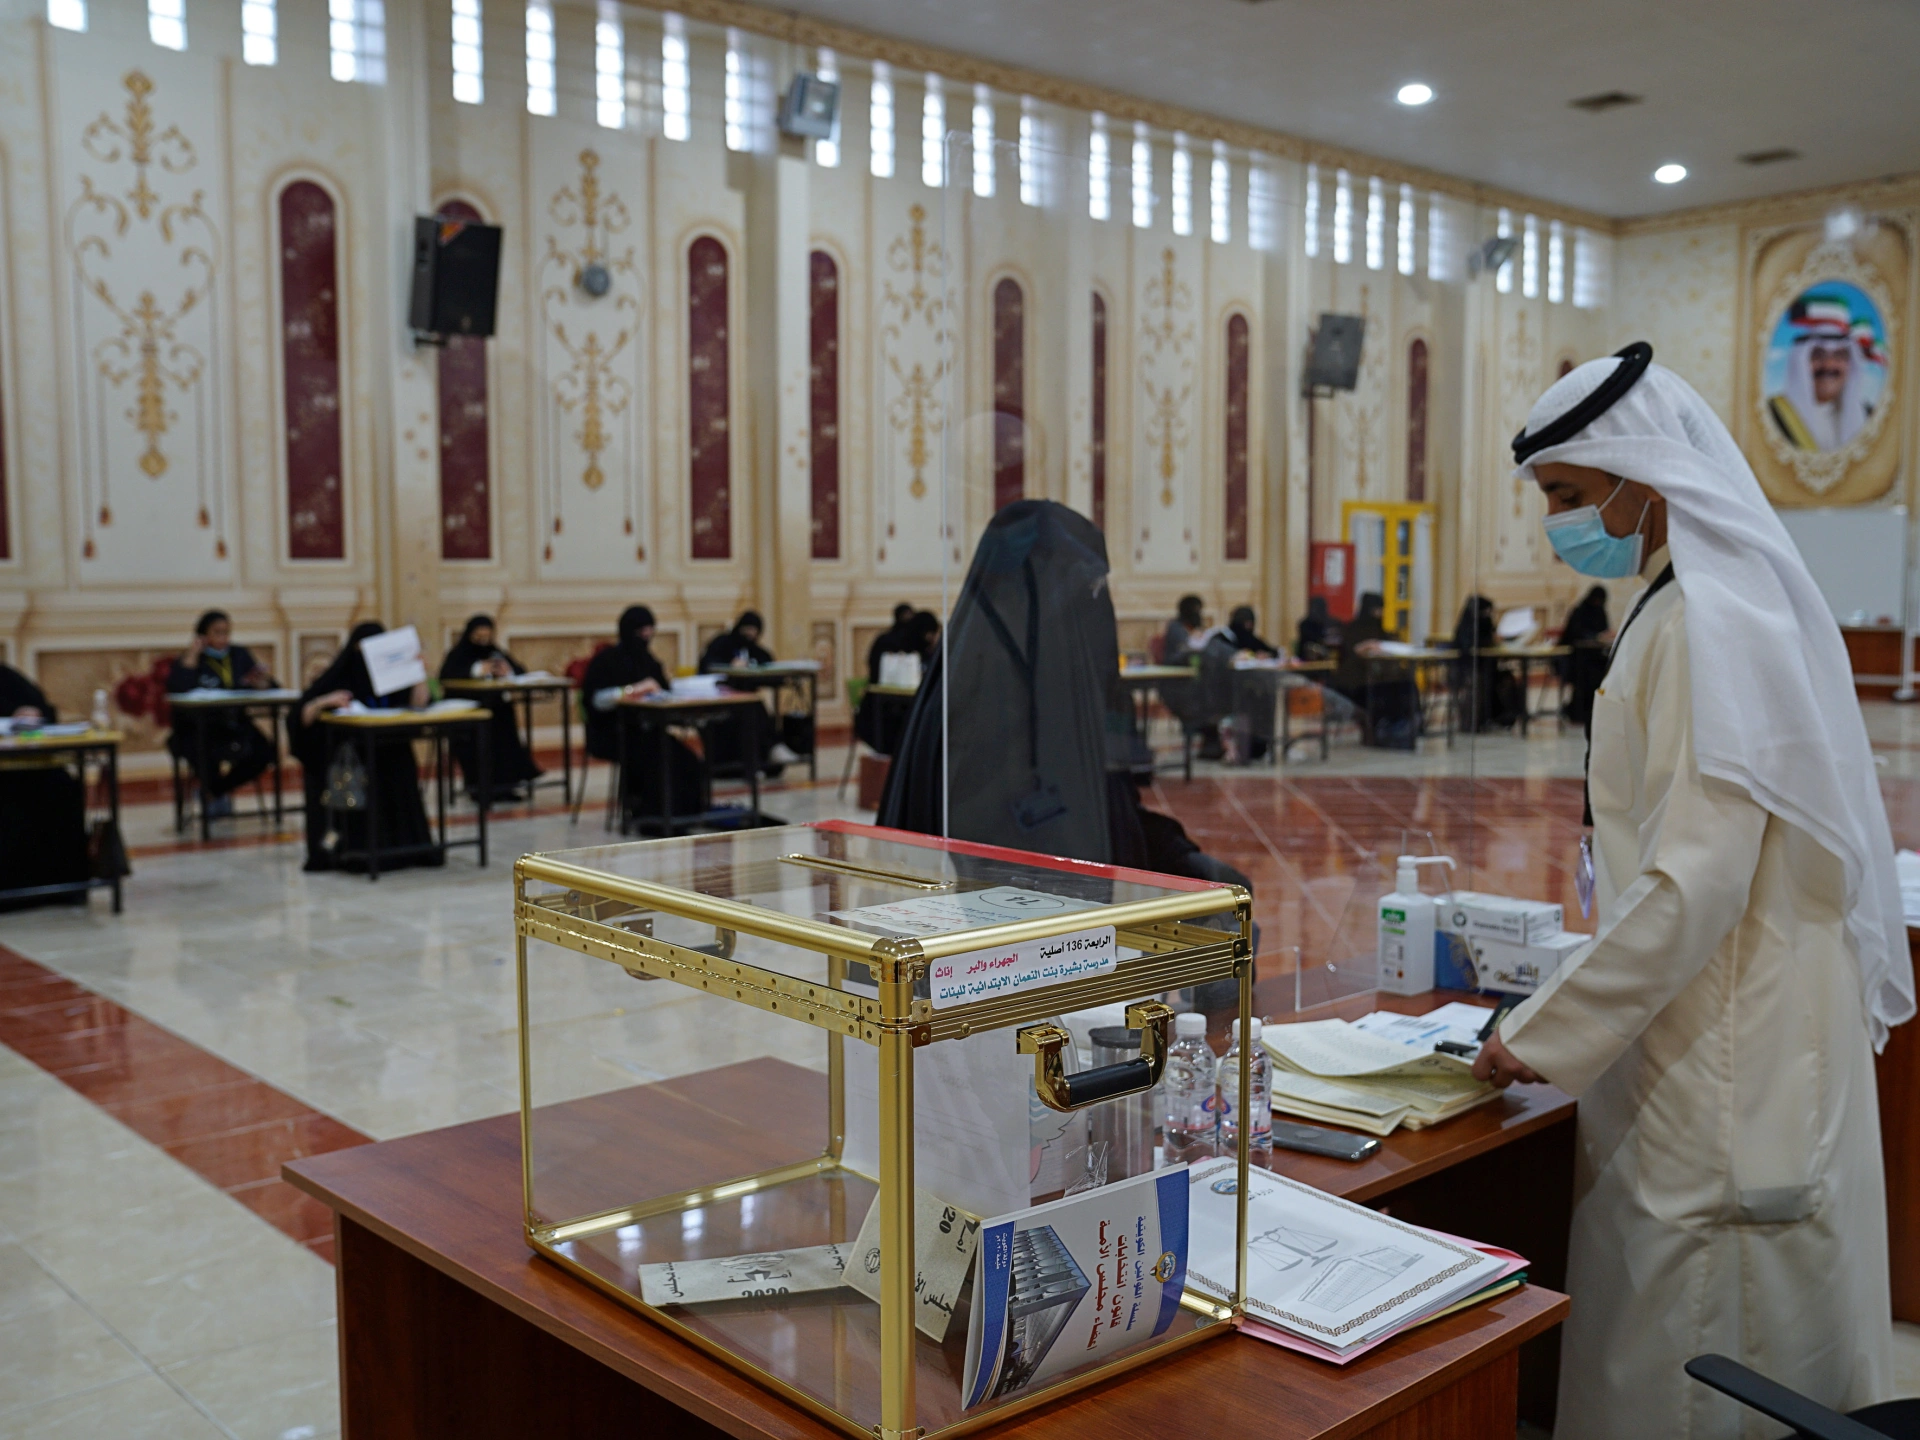 صورة متى يحق للمتجنس التصويت في الانتخابات مجلس الأمة الكويتية